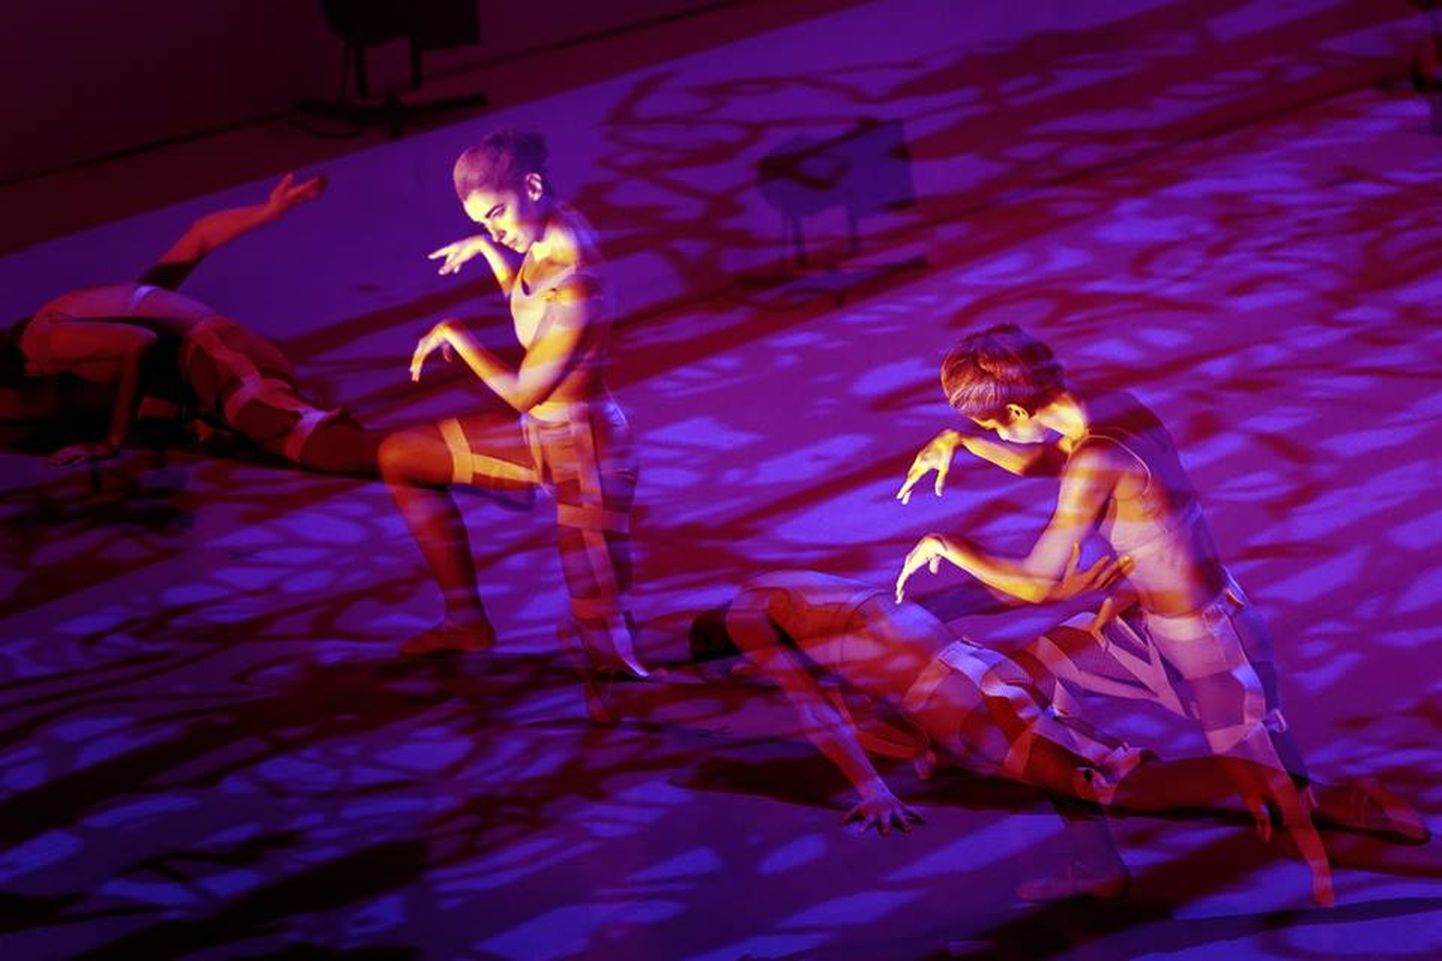 Depeche Mode'i muusikal ja Haruki Murakami romaanil põhinev ballett jõuab Eesti publiku ette Narva ooperipäevade programmis